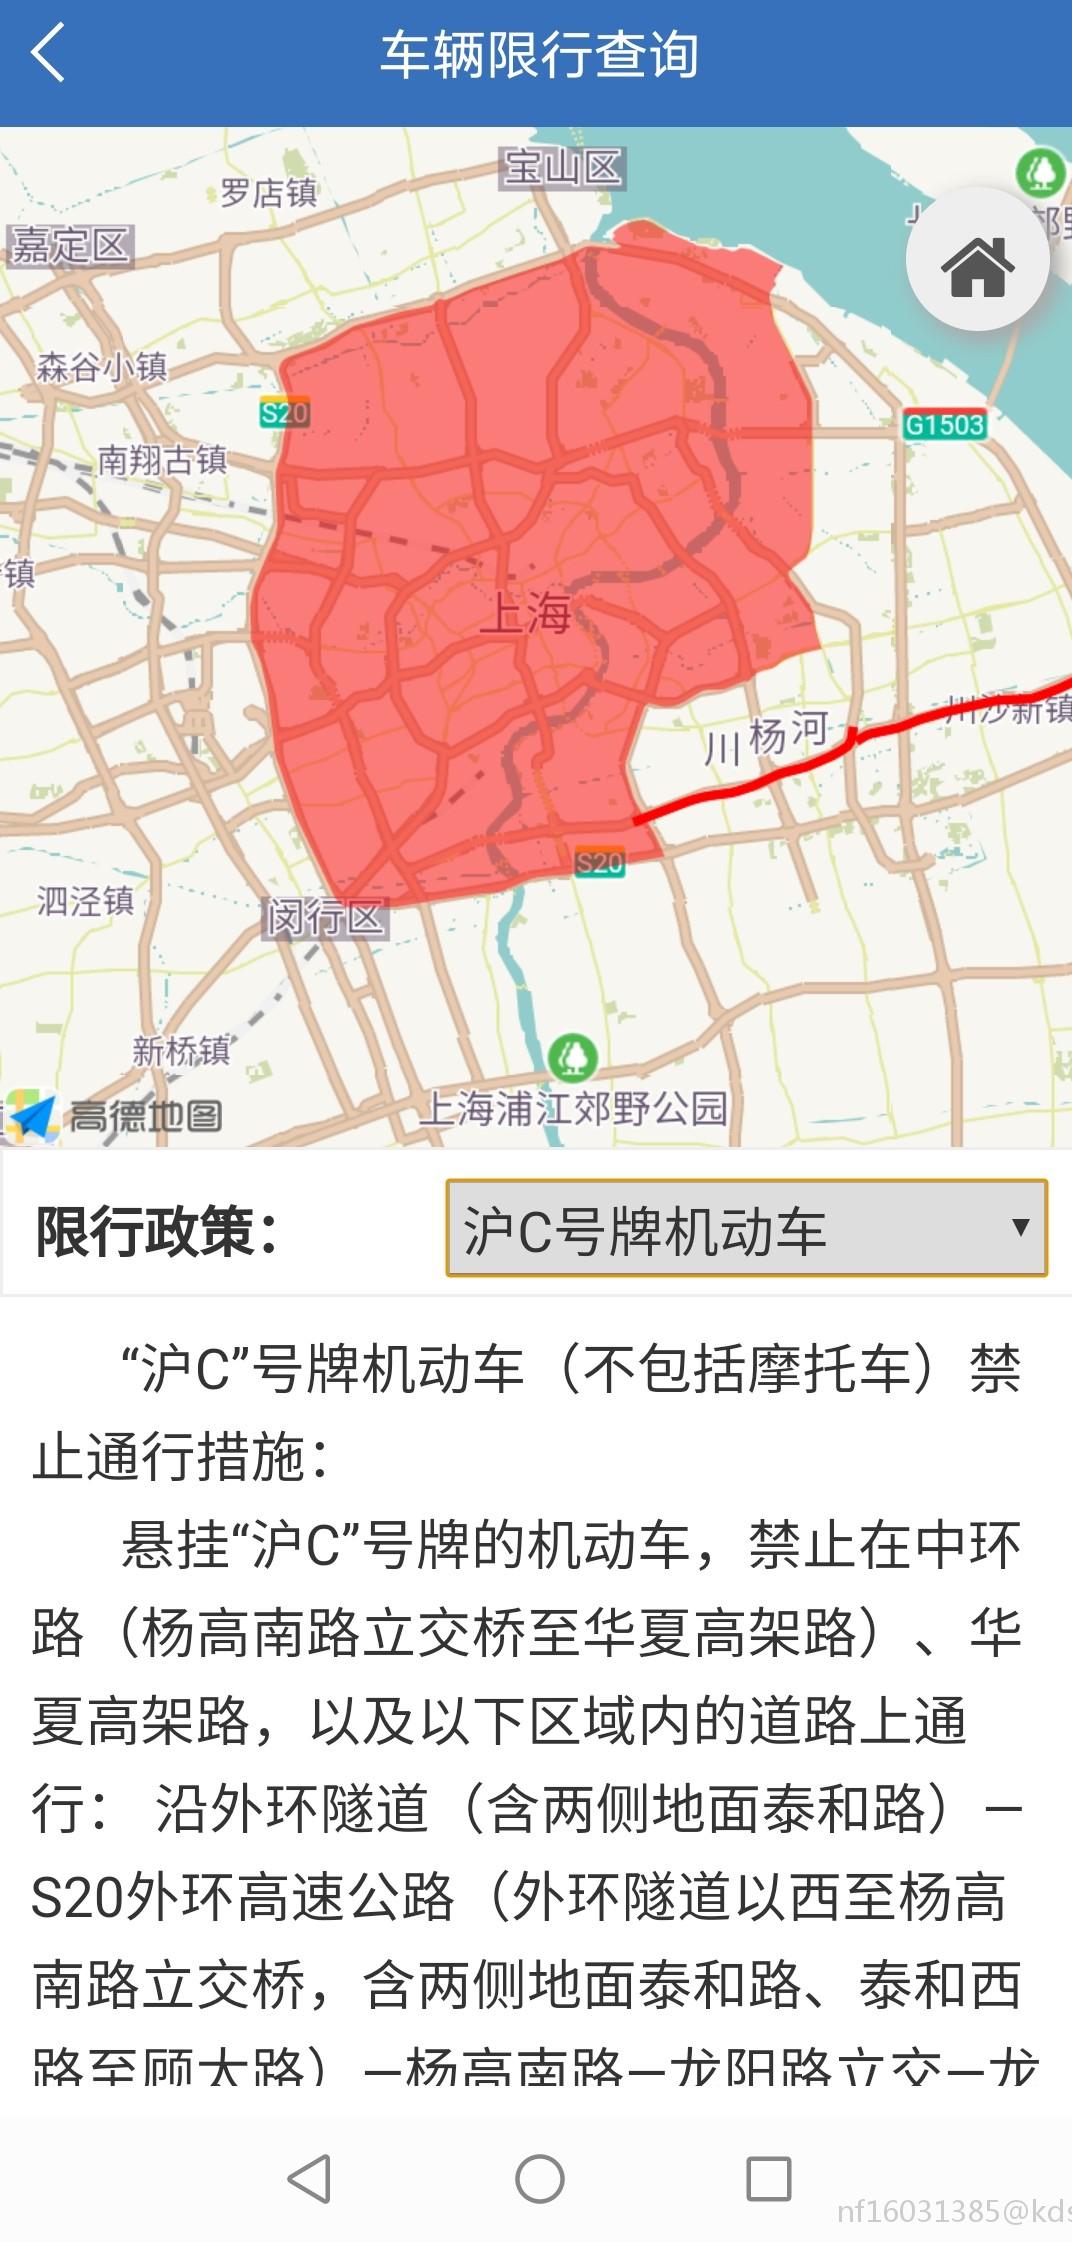 上海外牌禁摩区域地图图片